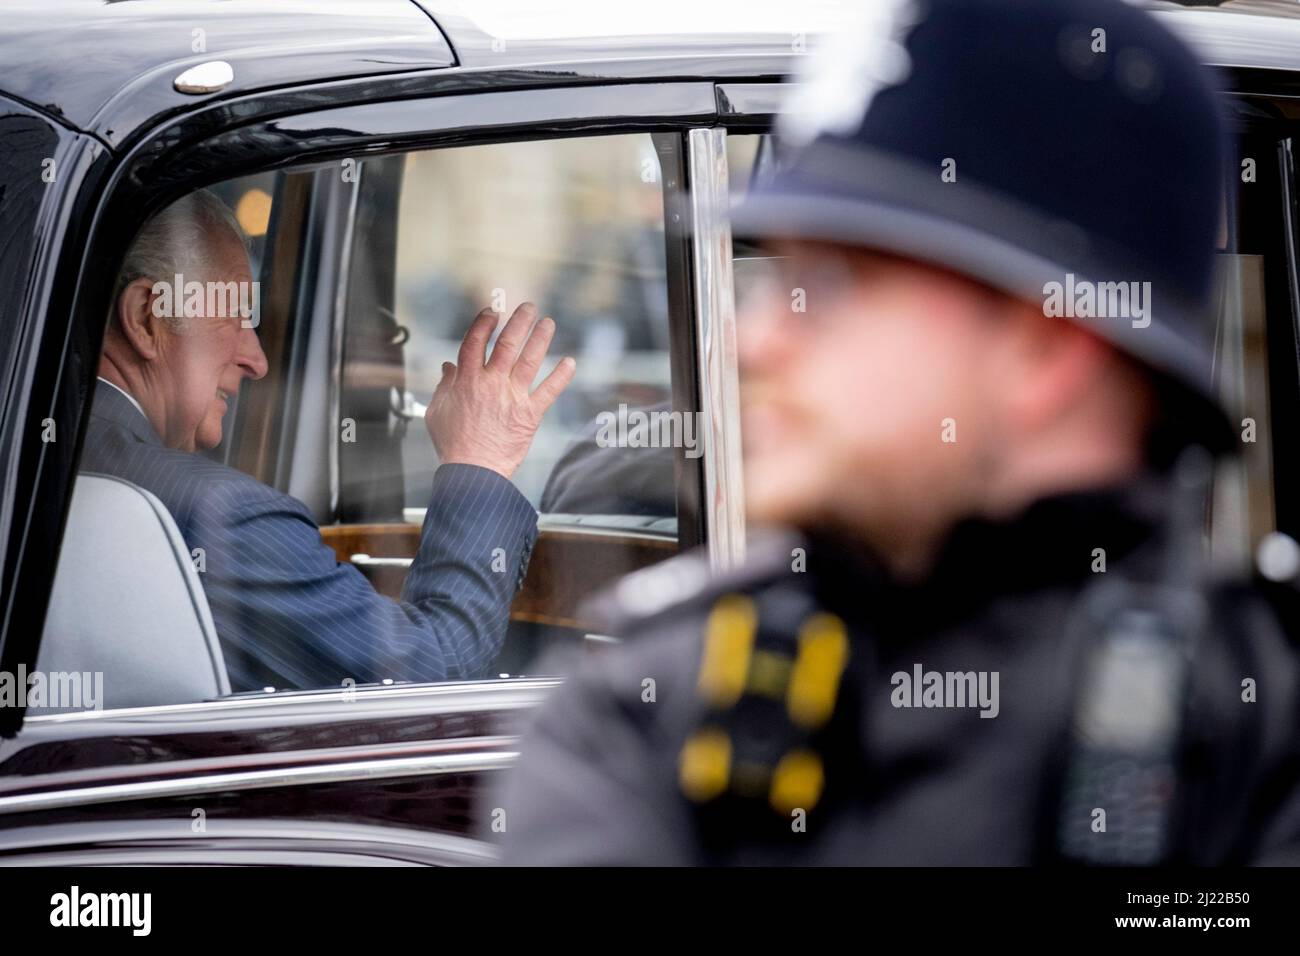 British Transport Police Officer Stockfotos und -bilder Kaufen - Alamy